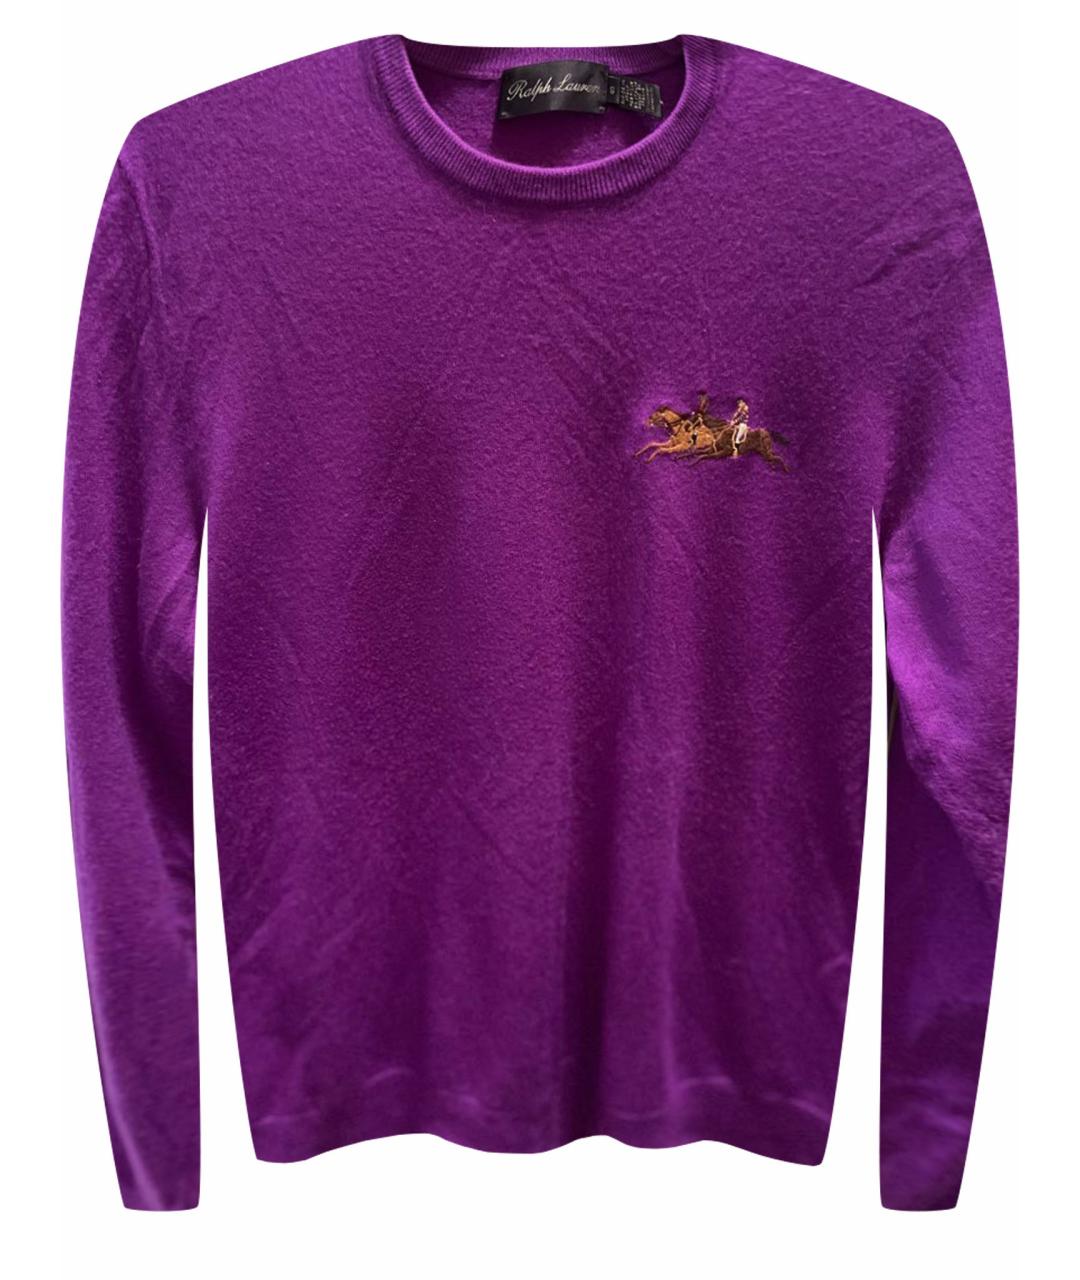 RALPH LAUREN PURPLE LABEL Фиолетовый кашемировый джемпер / свитер, фото 1